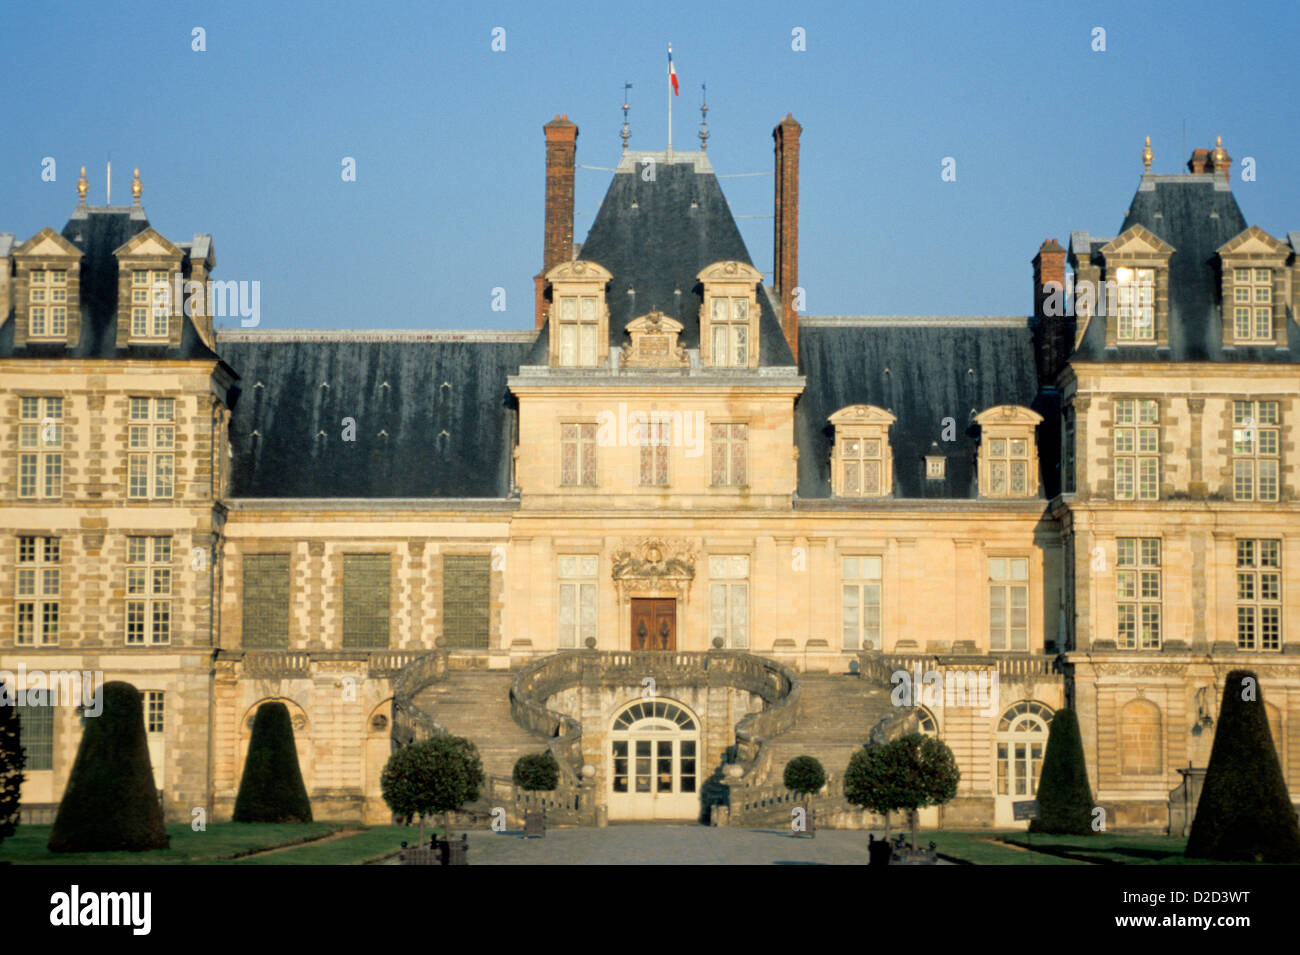 Frankreich. Fontainebleau Palast In der späten Nachmittagssonne betrachtet von White Horse Gericht. Stockfoto